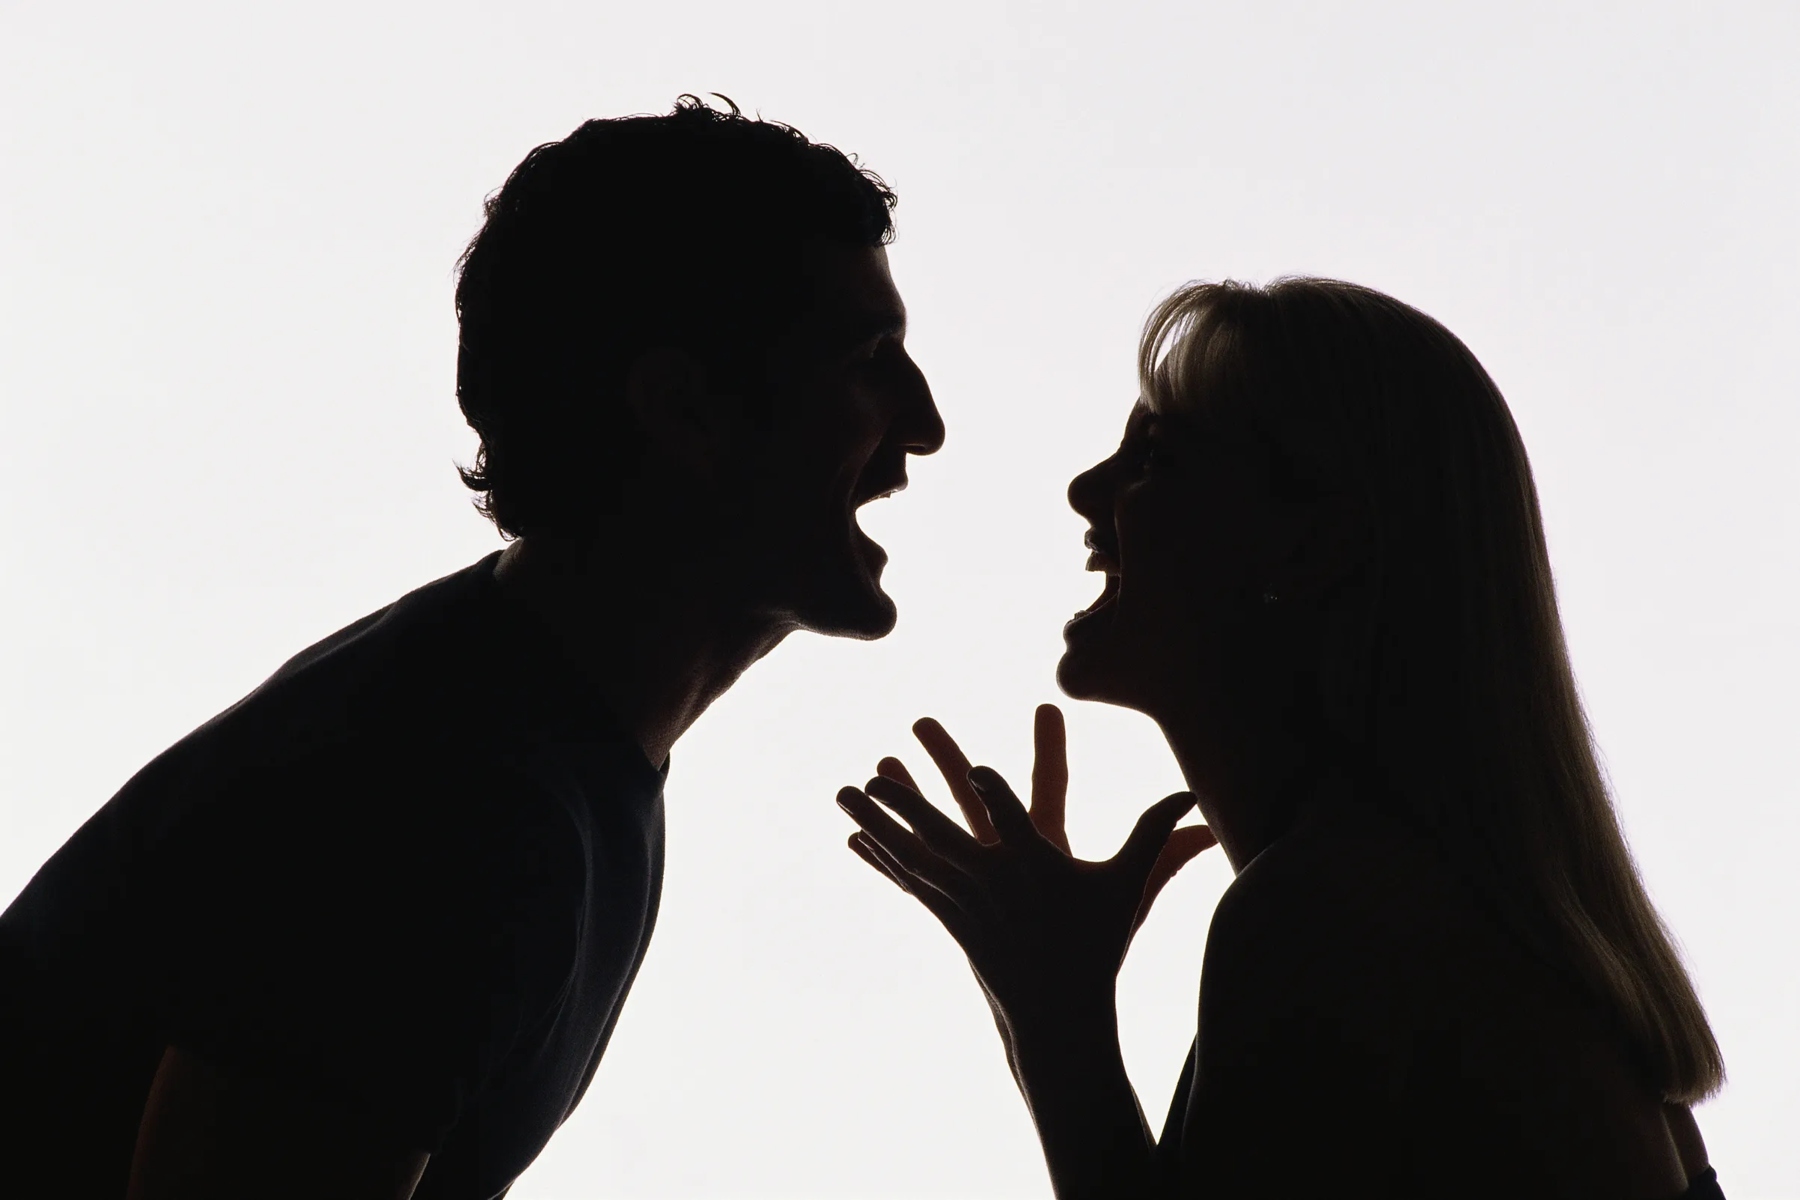 Σεξ θυμός: Ο θυμός μπορεί να επηρεάσει τη σεξουαλική σας ορμή